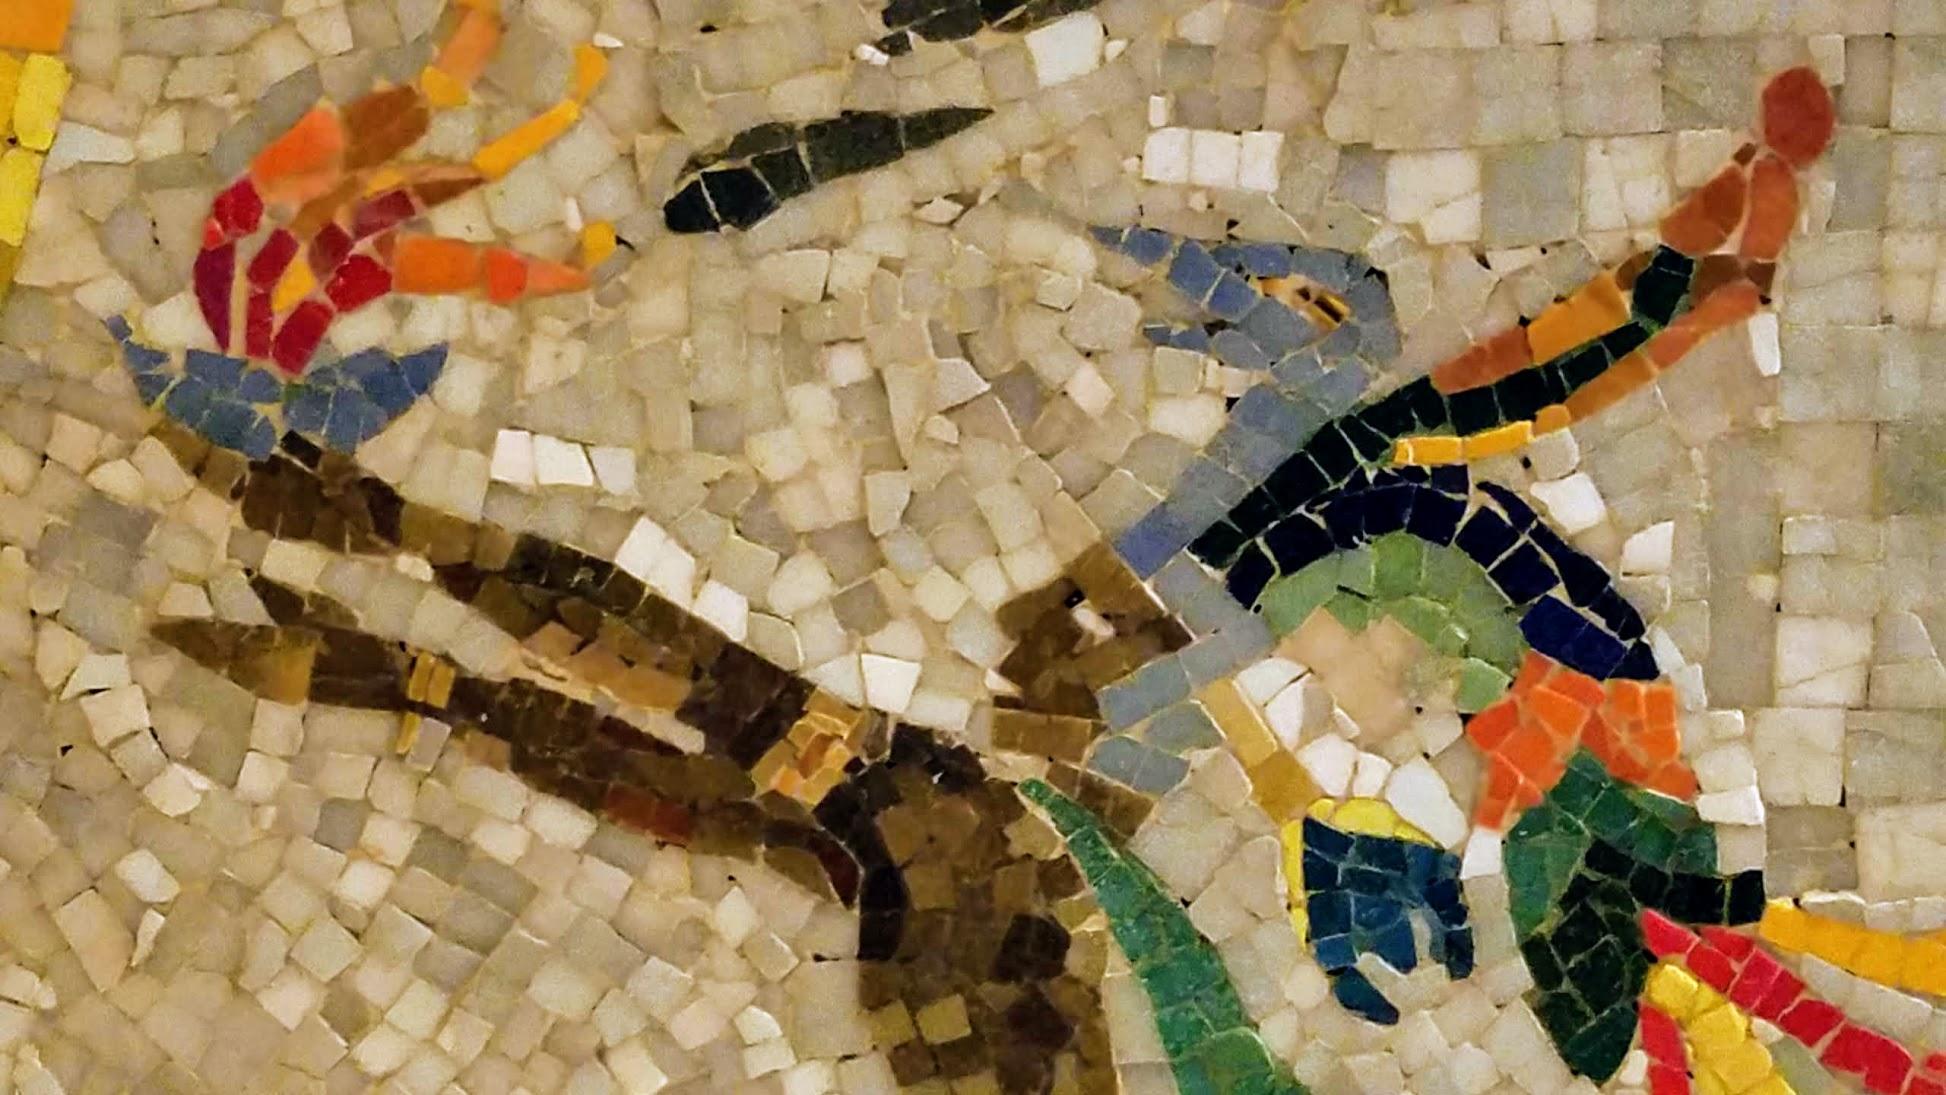 mayan mosaic art